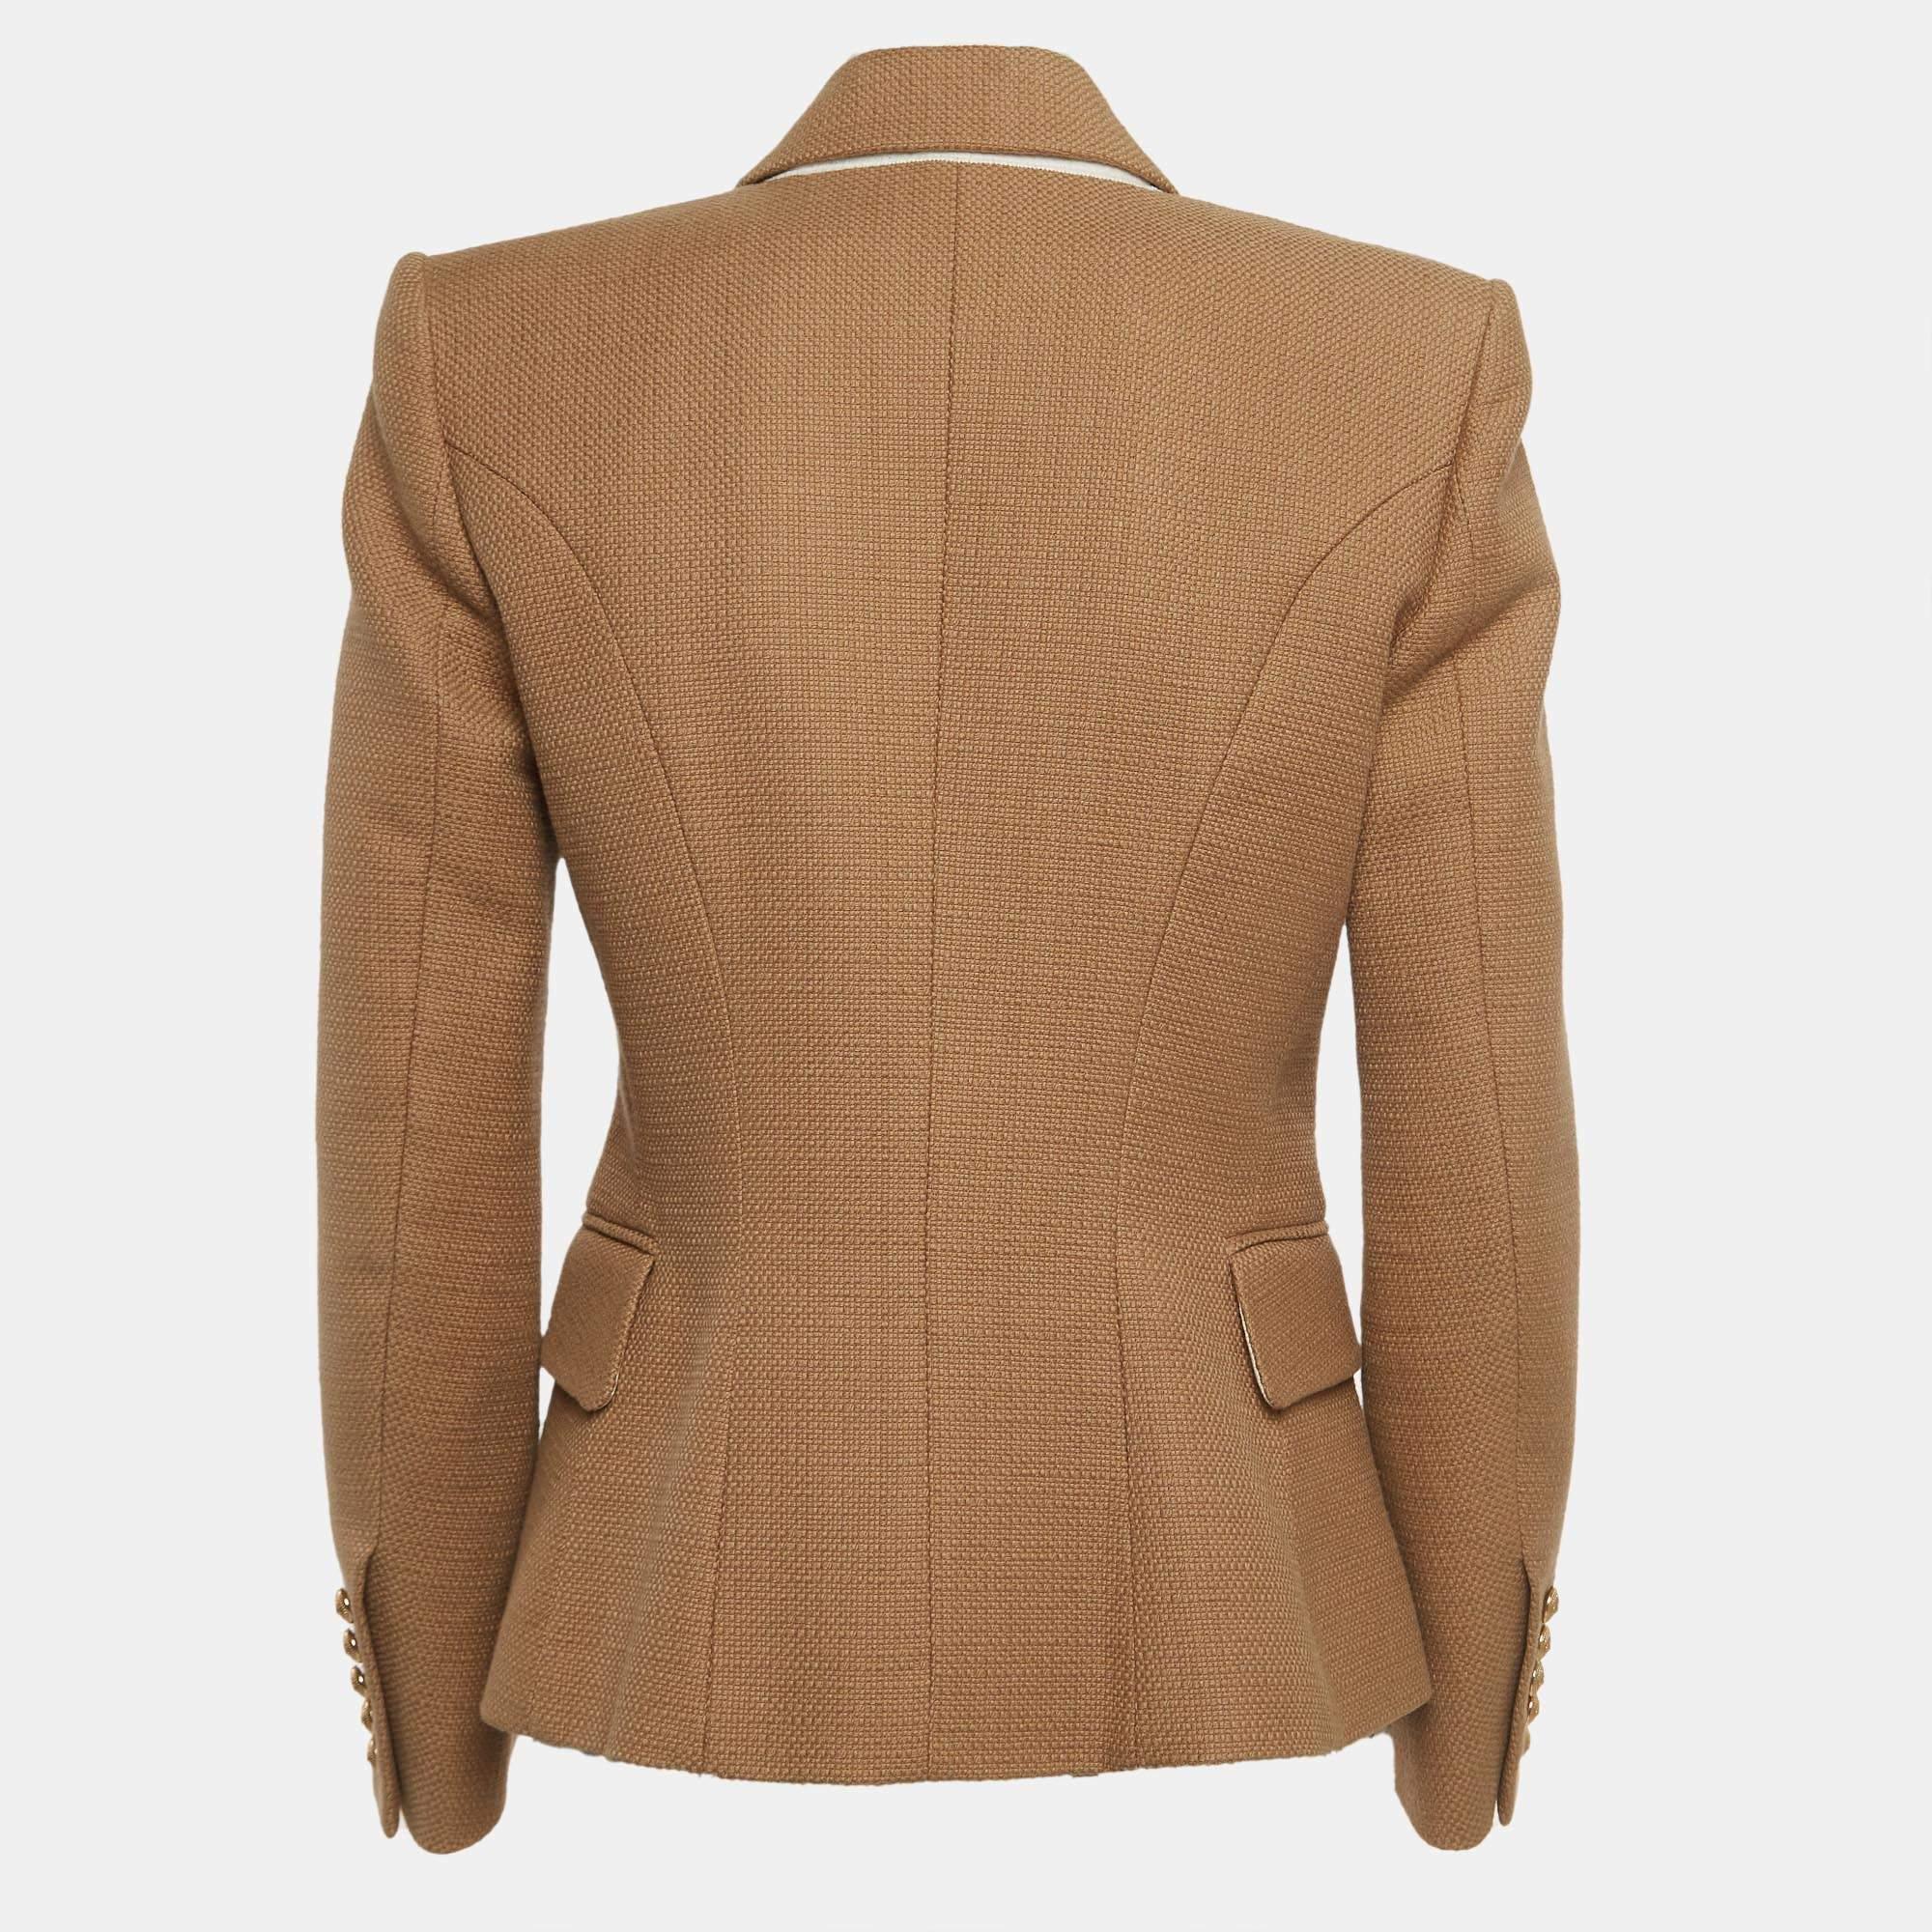 Ce blazer vous apporte à la fois classe et luxe lorsque vous le portez. Il est rehaussé de manches longues, ce qui lui confère une finition soignée.

